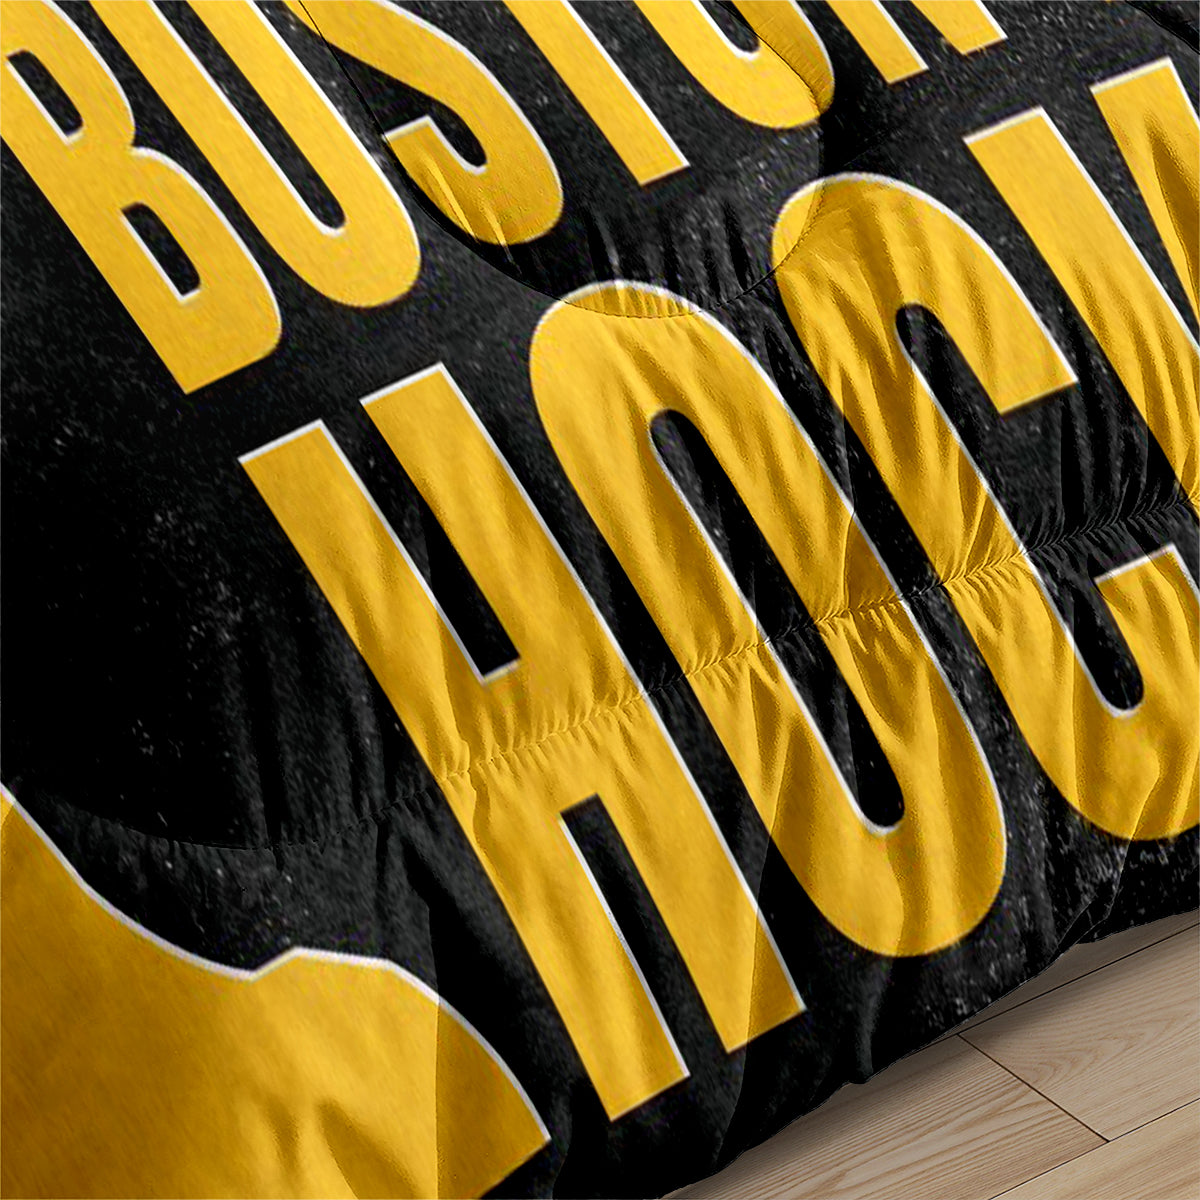 Boston Bruins Hockey Comforter Pillowcases 3PC Sets Blanket All Season Reversible Quilted Duvet